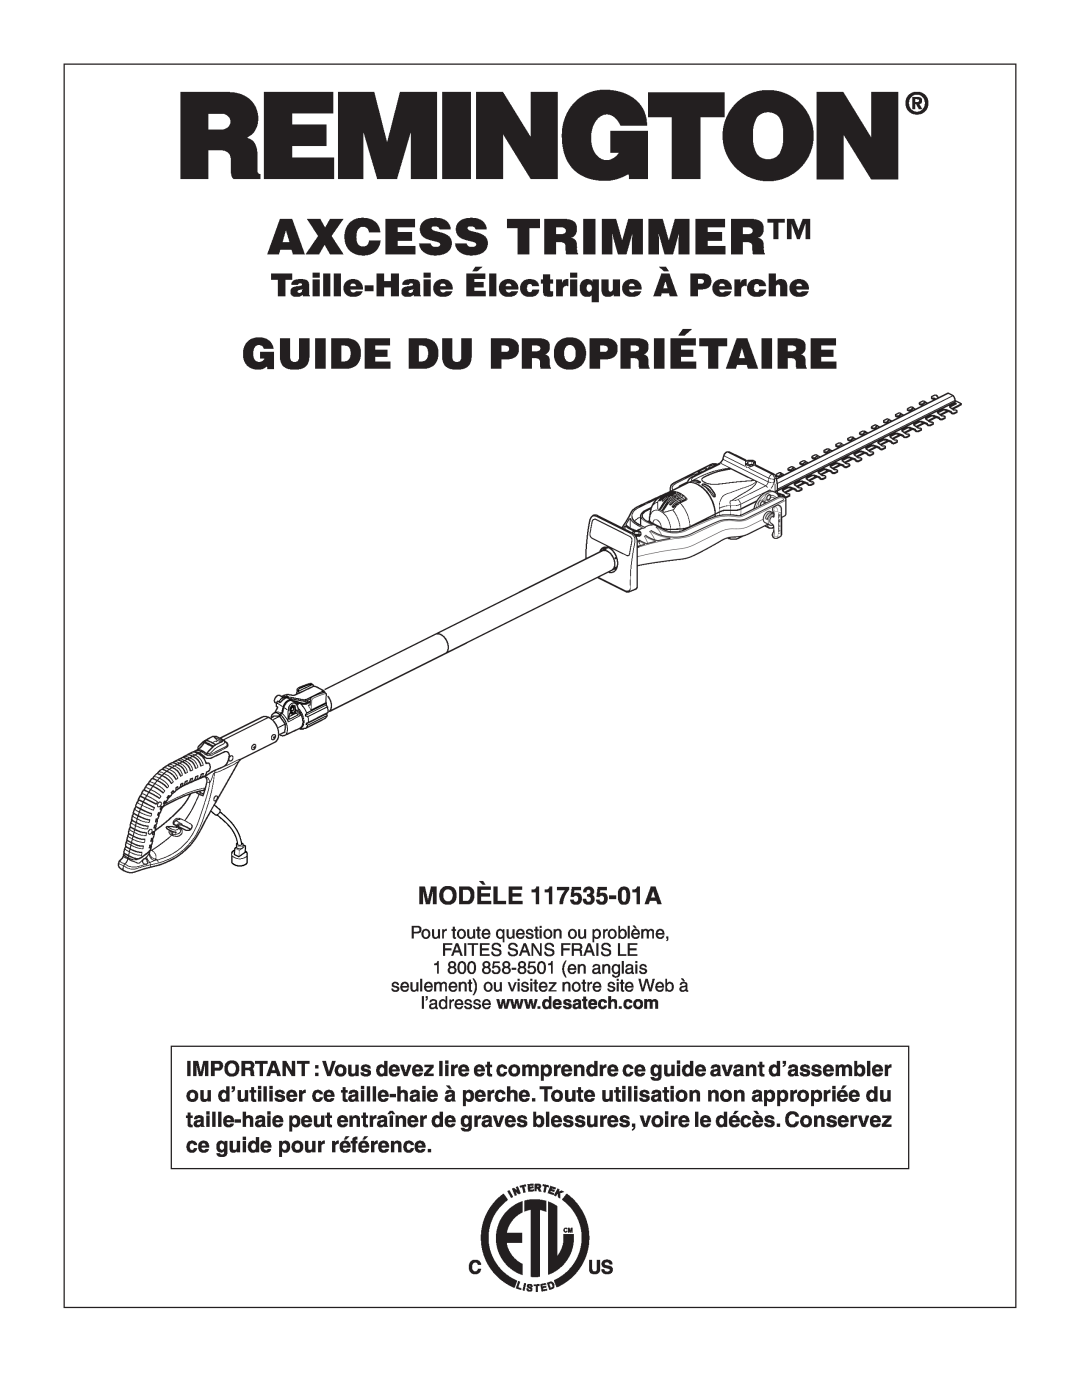 Remington Power Tools Guide Du Propriétaire, Taille-Haie Électrique À Perche, MODÈLE 117535-01A, Axcess Trimmer 